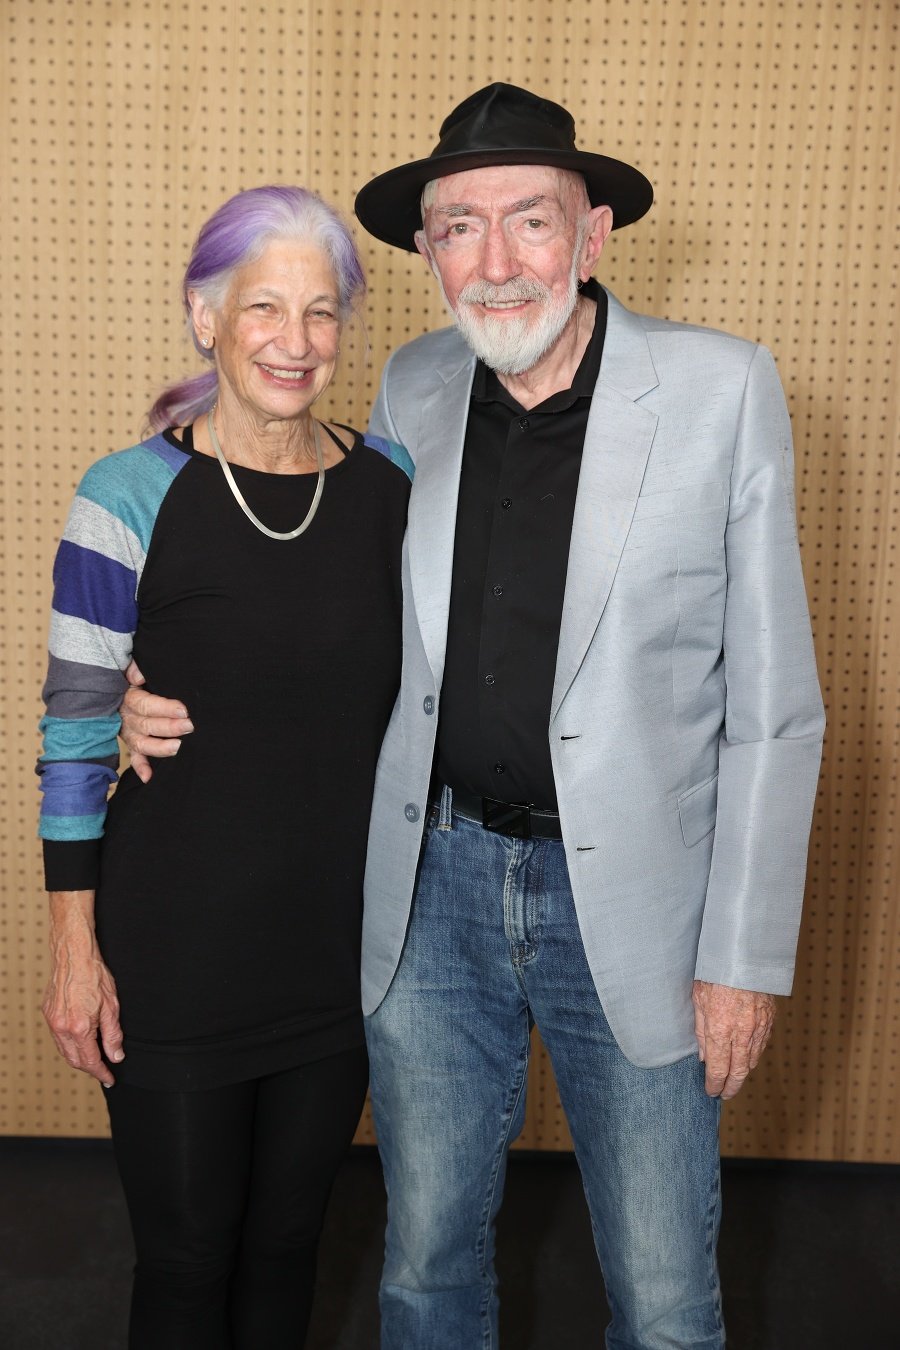 Kip (81) s manželkou
Carolee Joyce Winstein (71)
tvoria pár už 37 rokov.
